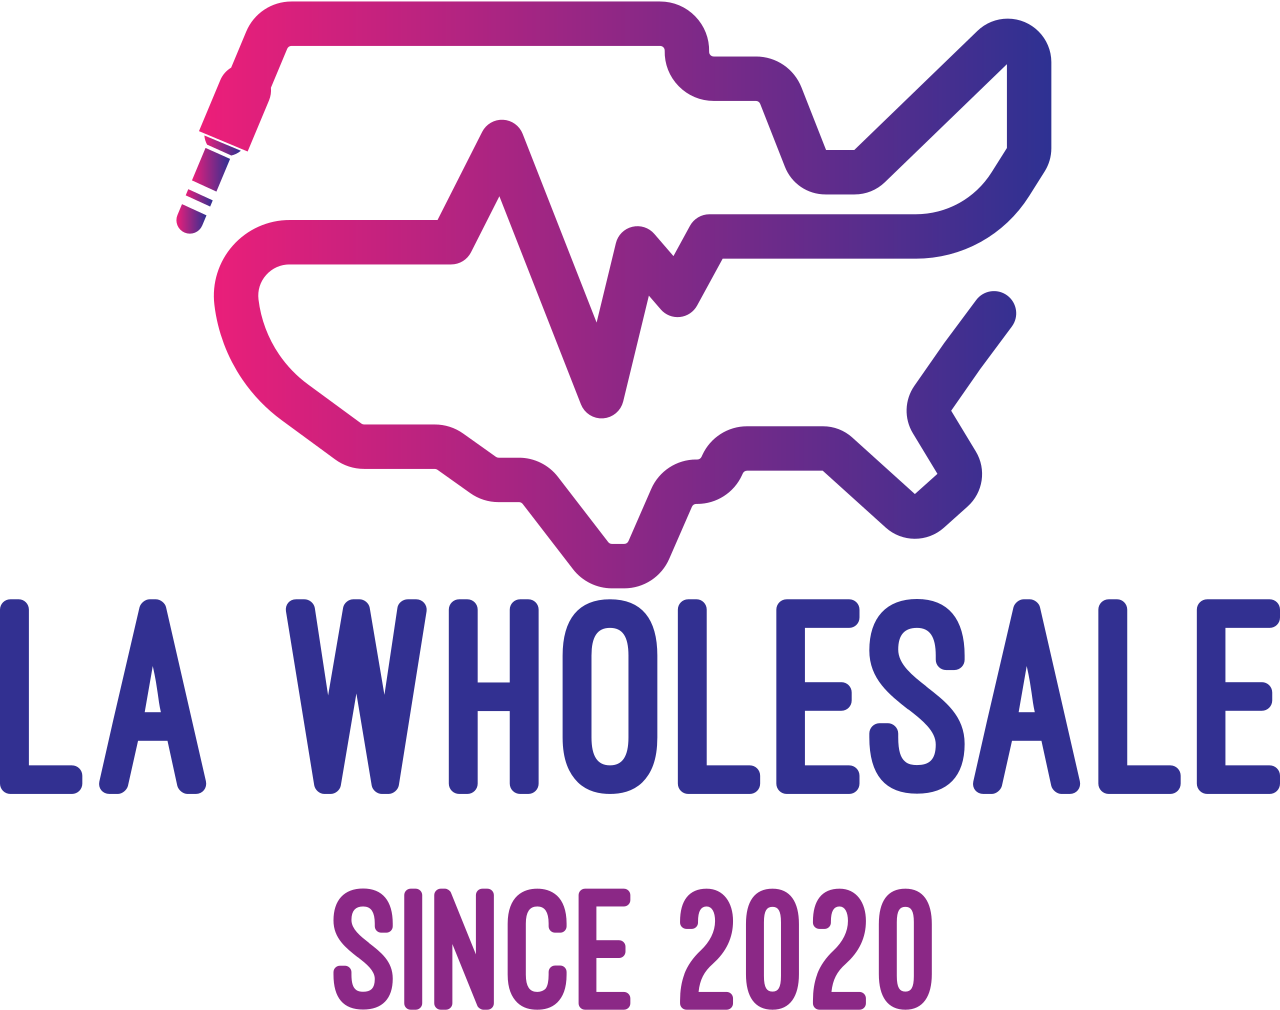 LA Wholesale 's web page